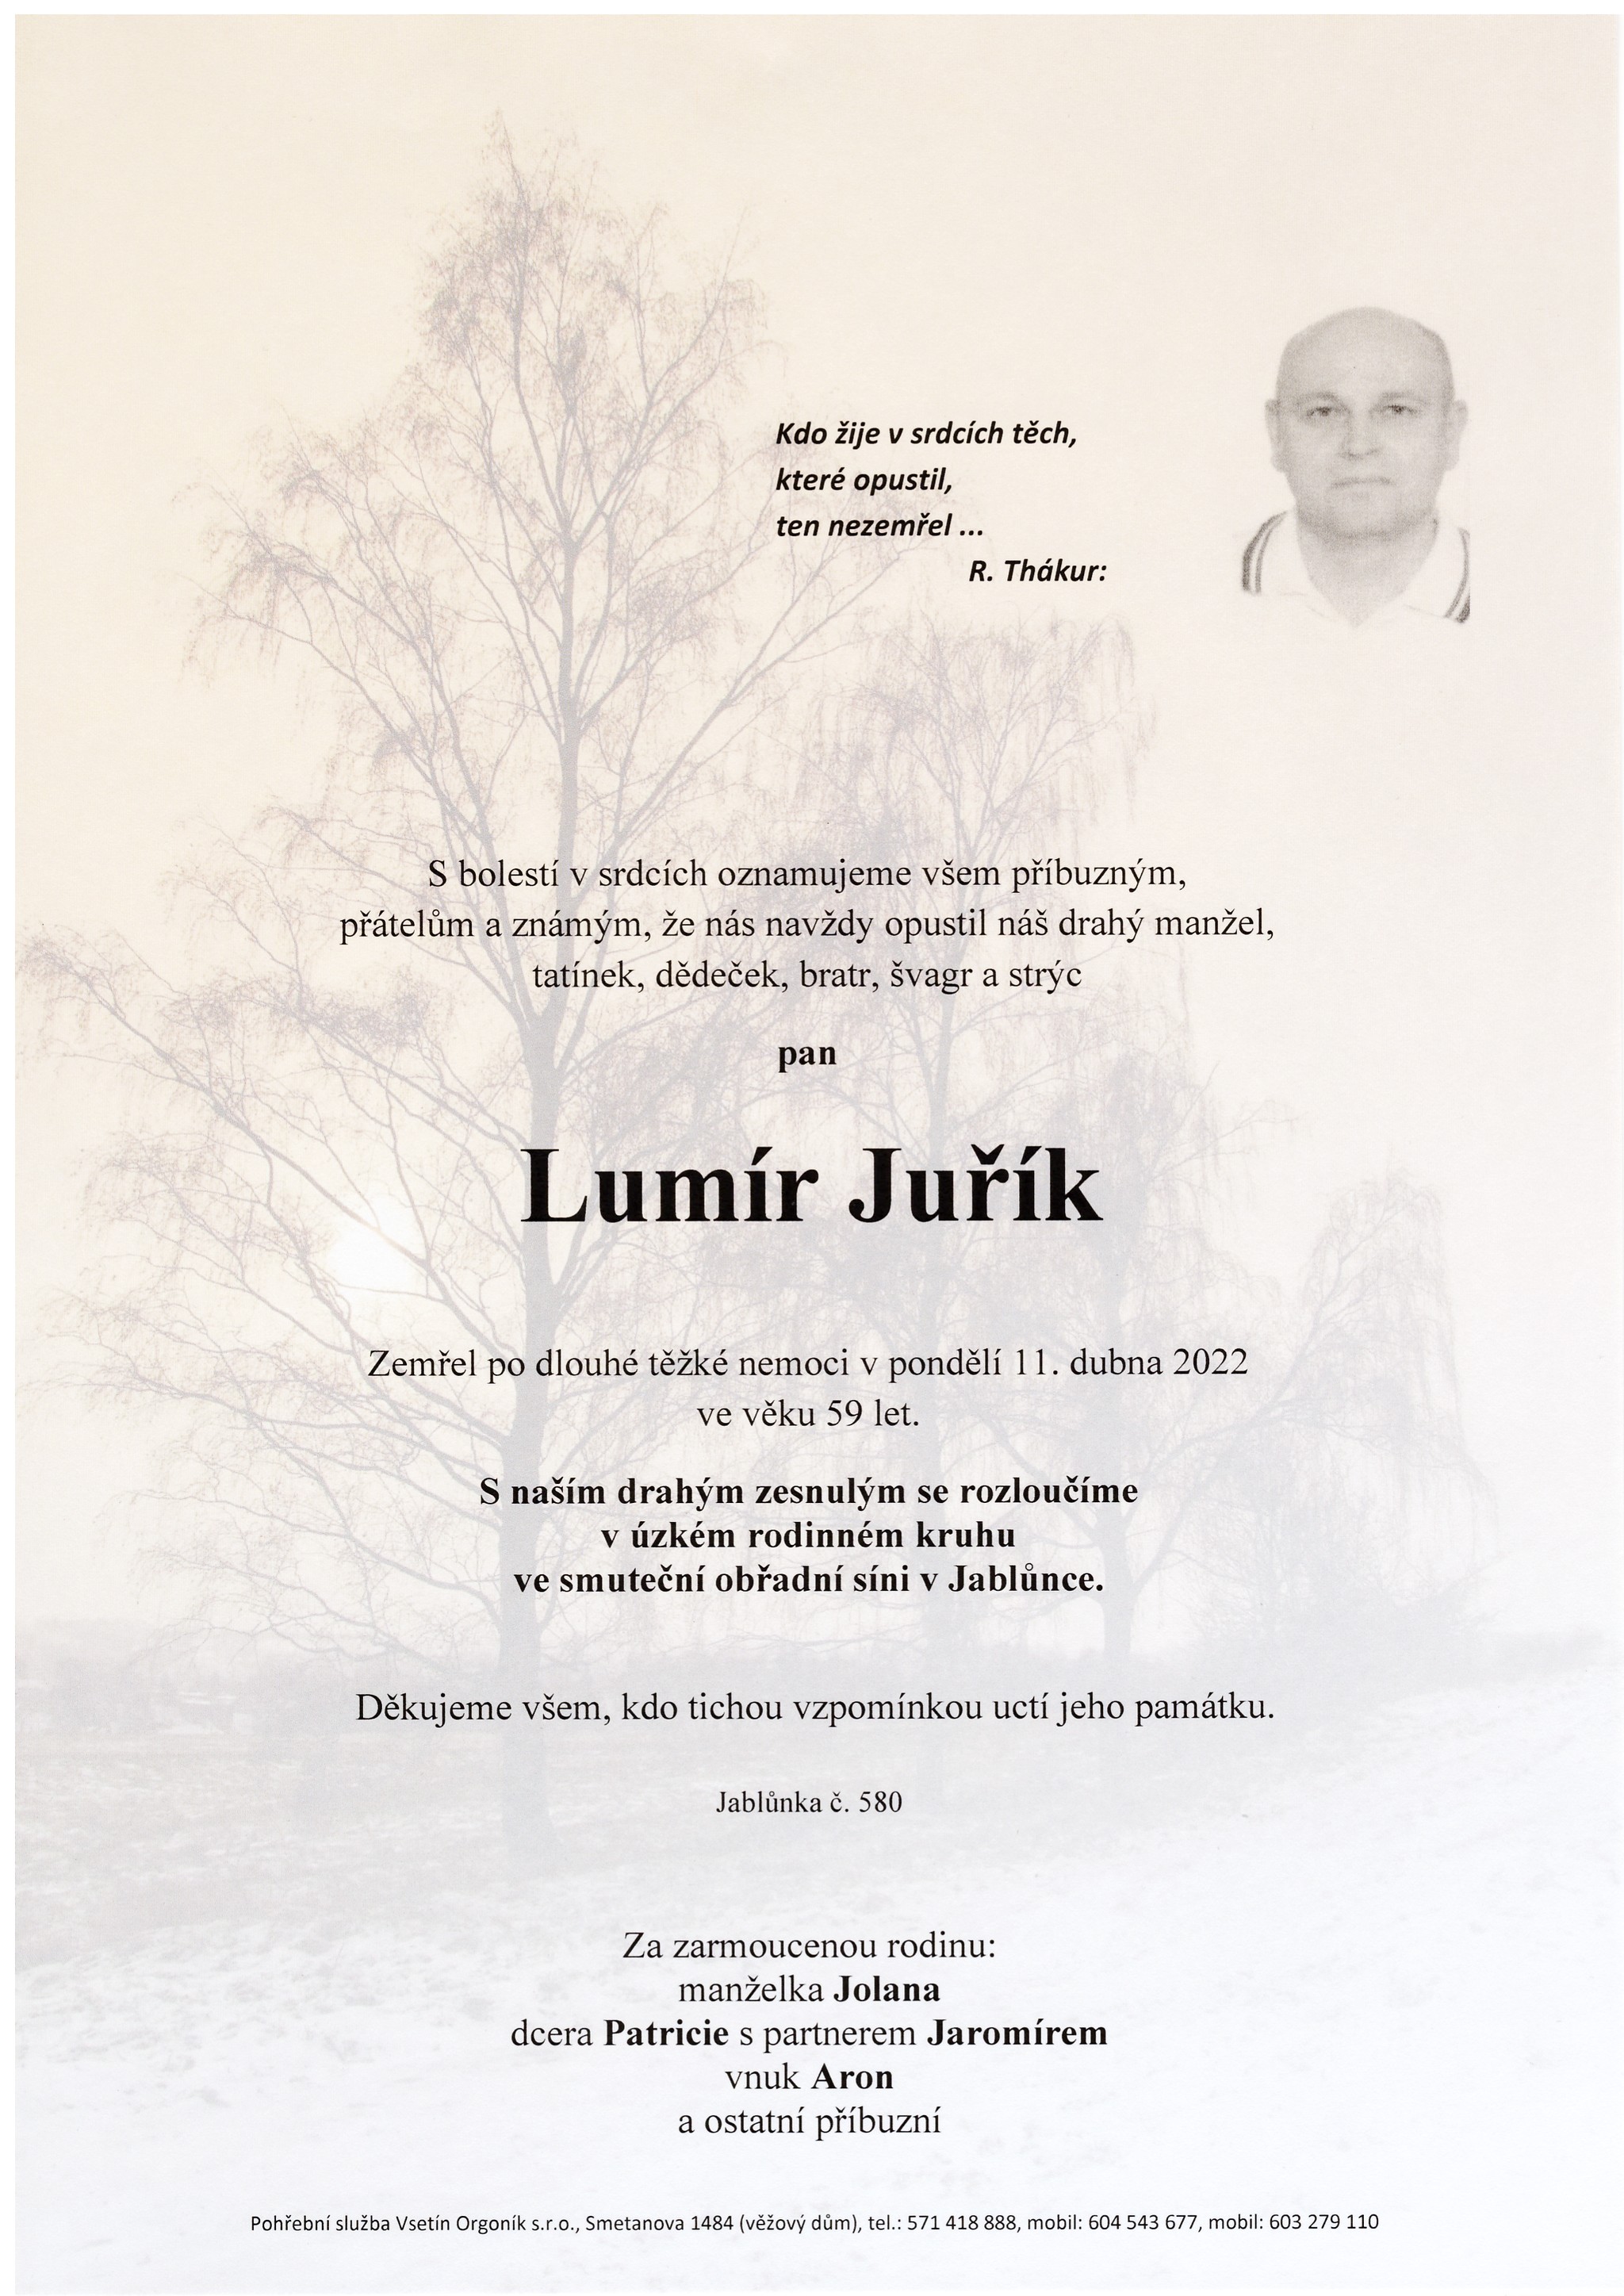 Lumír Juřík